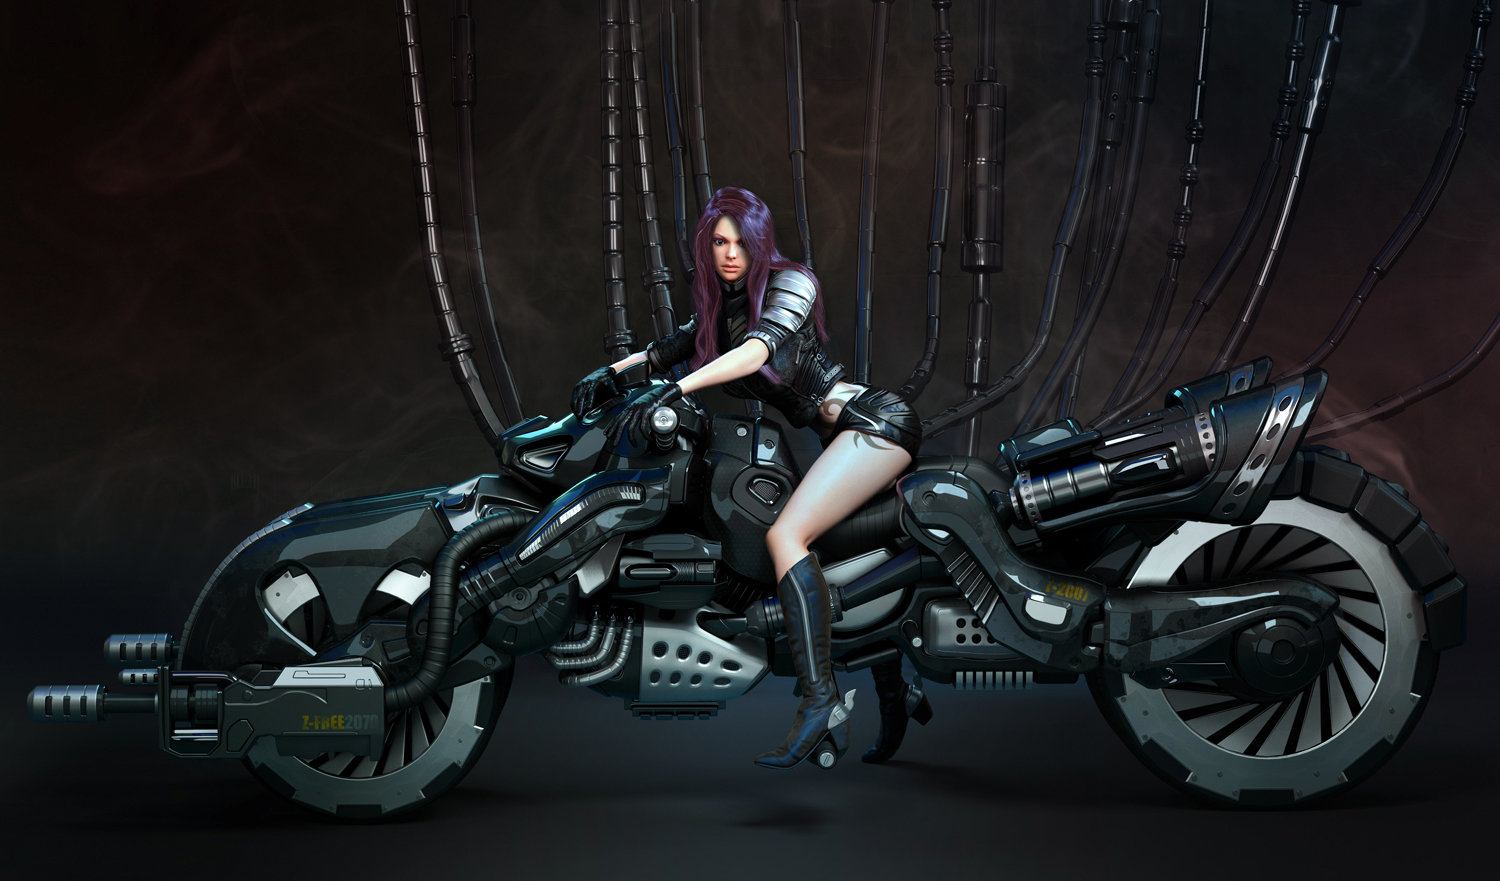 Cyberpunk motorcycle art фото 39